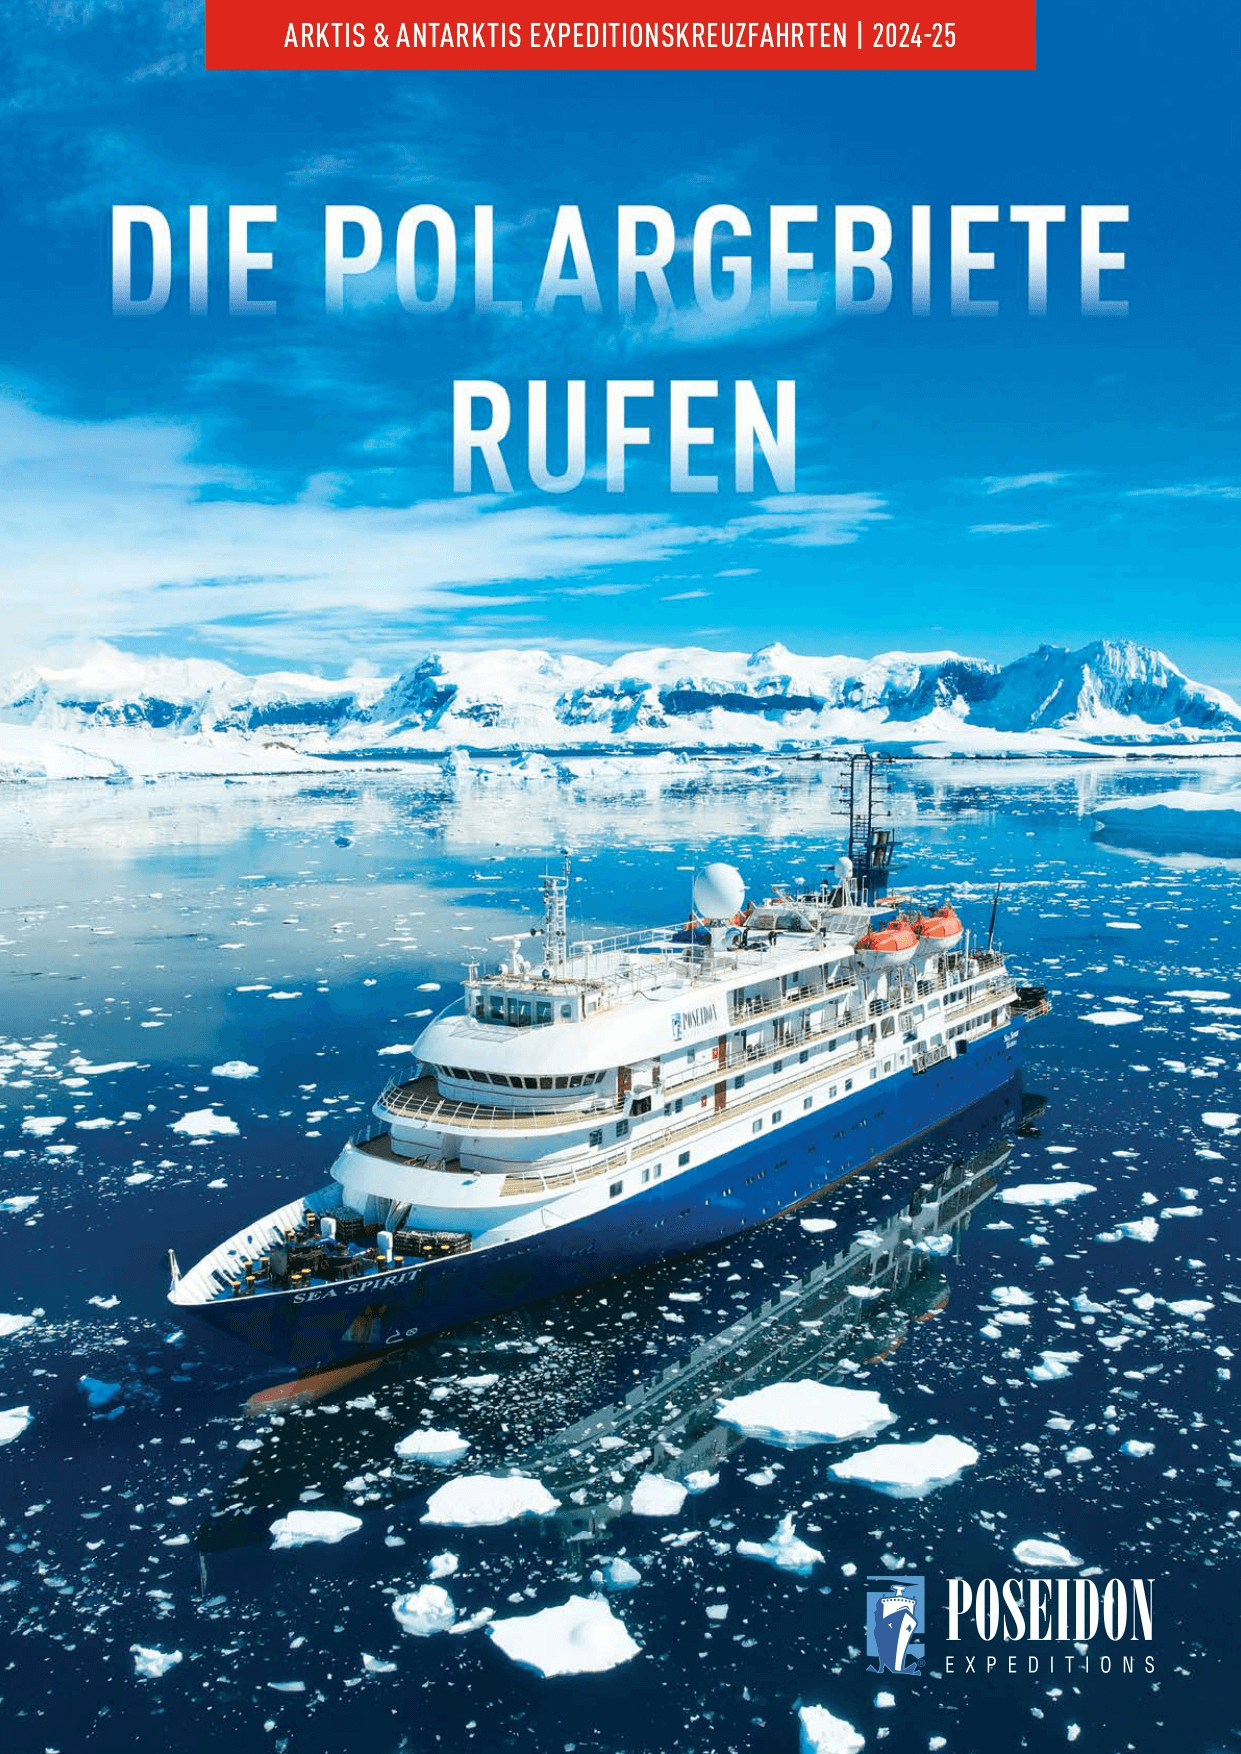 Arktis und Antarktis <b>2024/2025</b> (deutsche Version)